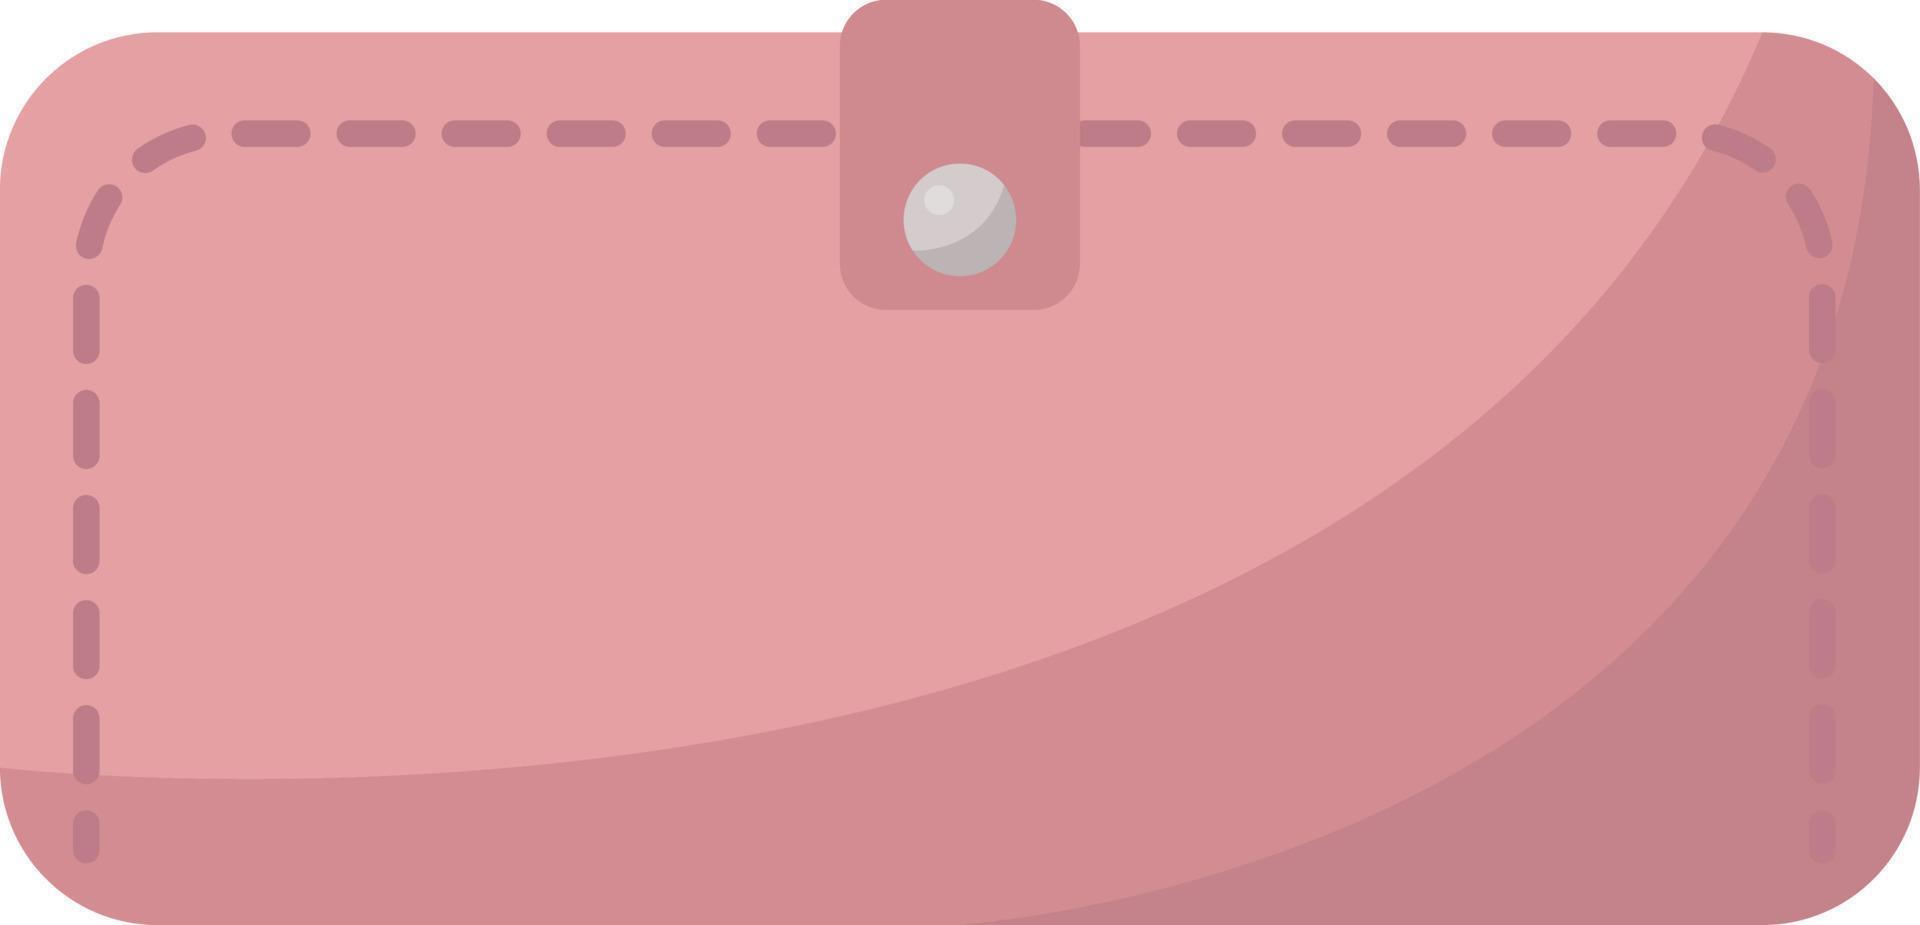 carteira de mulher rosa, ilustração, vetor em fundo branco